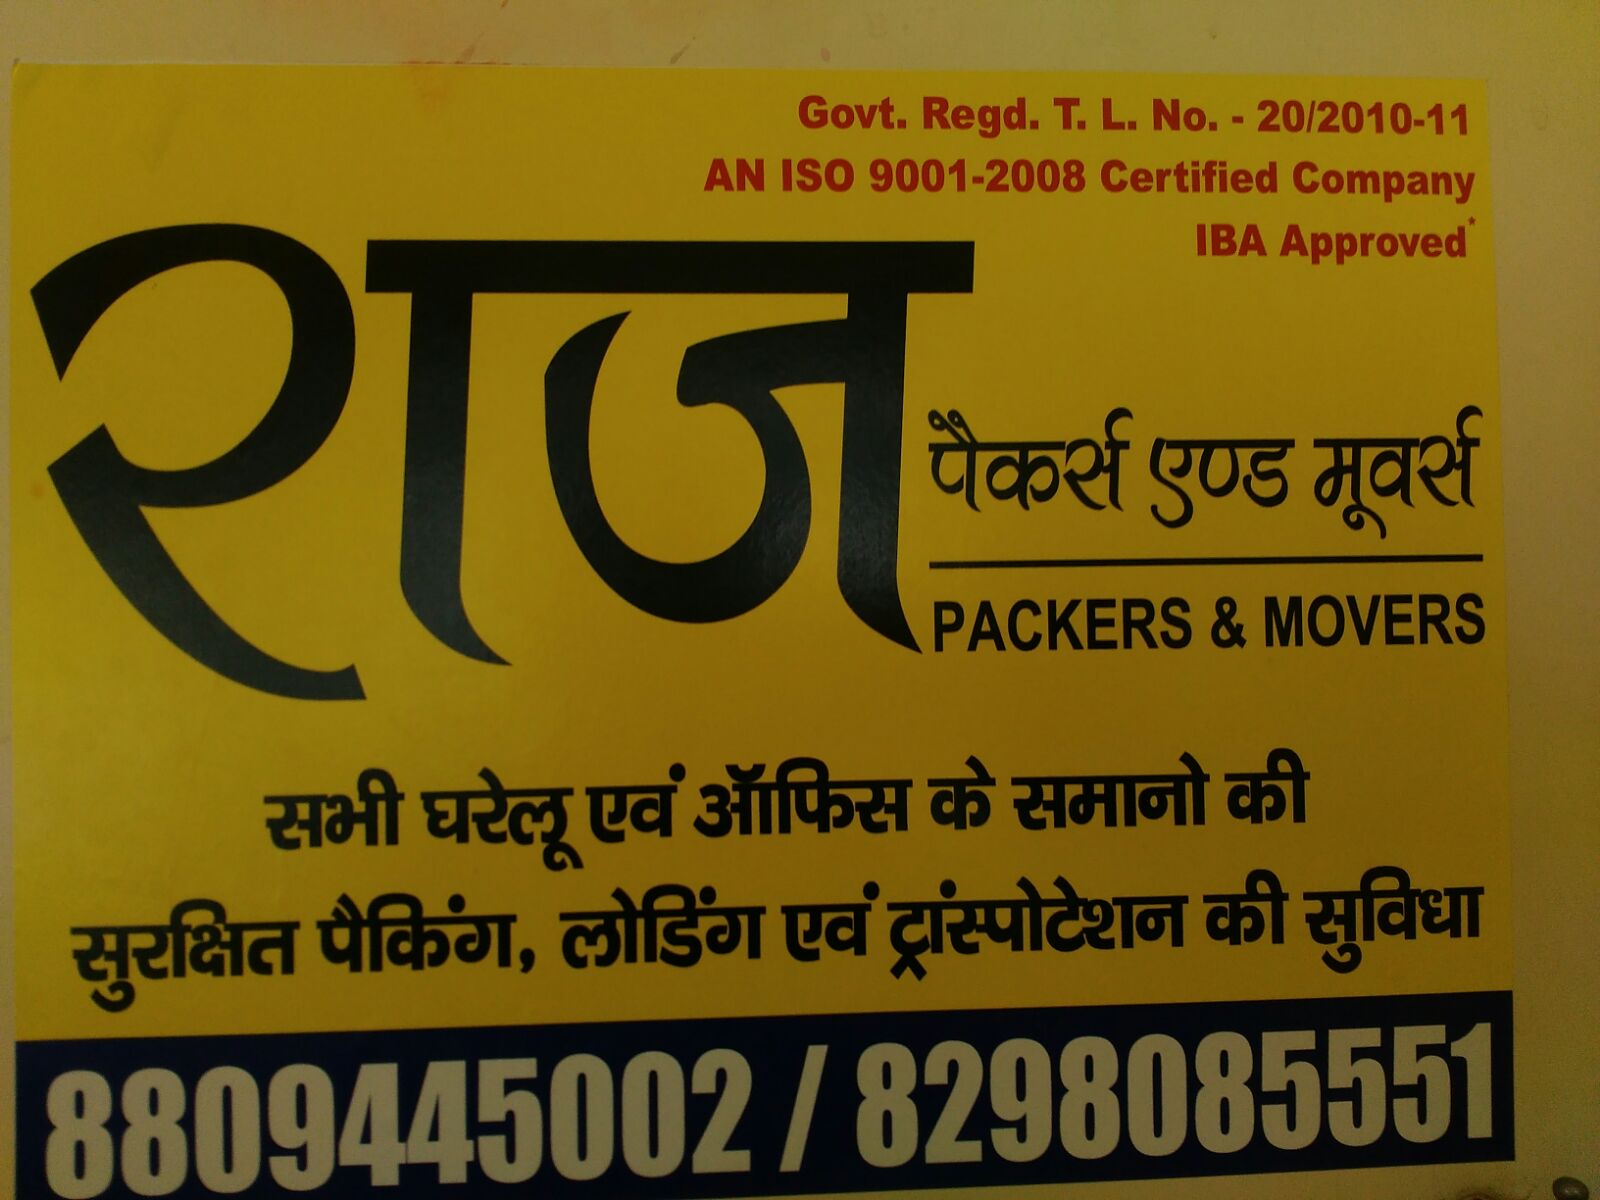  raj packers & movers in hazaribagh